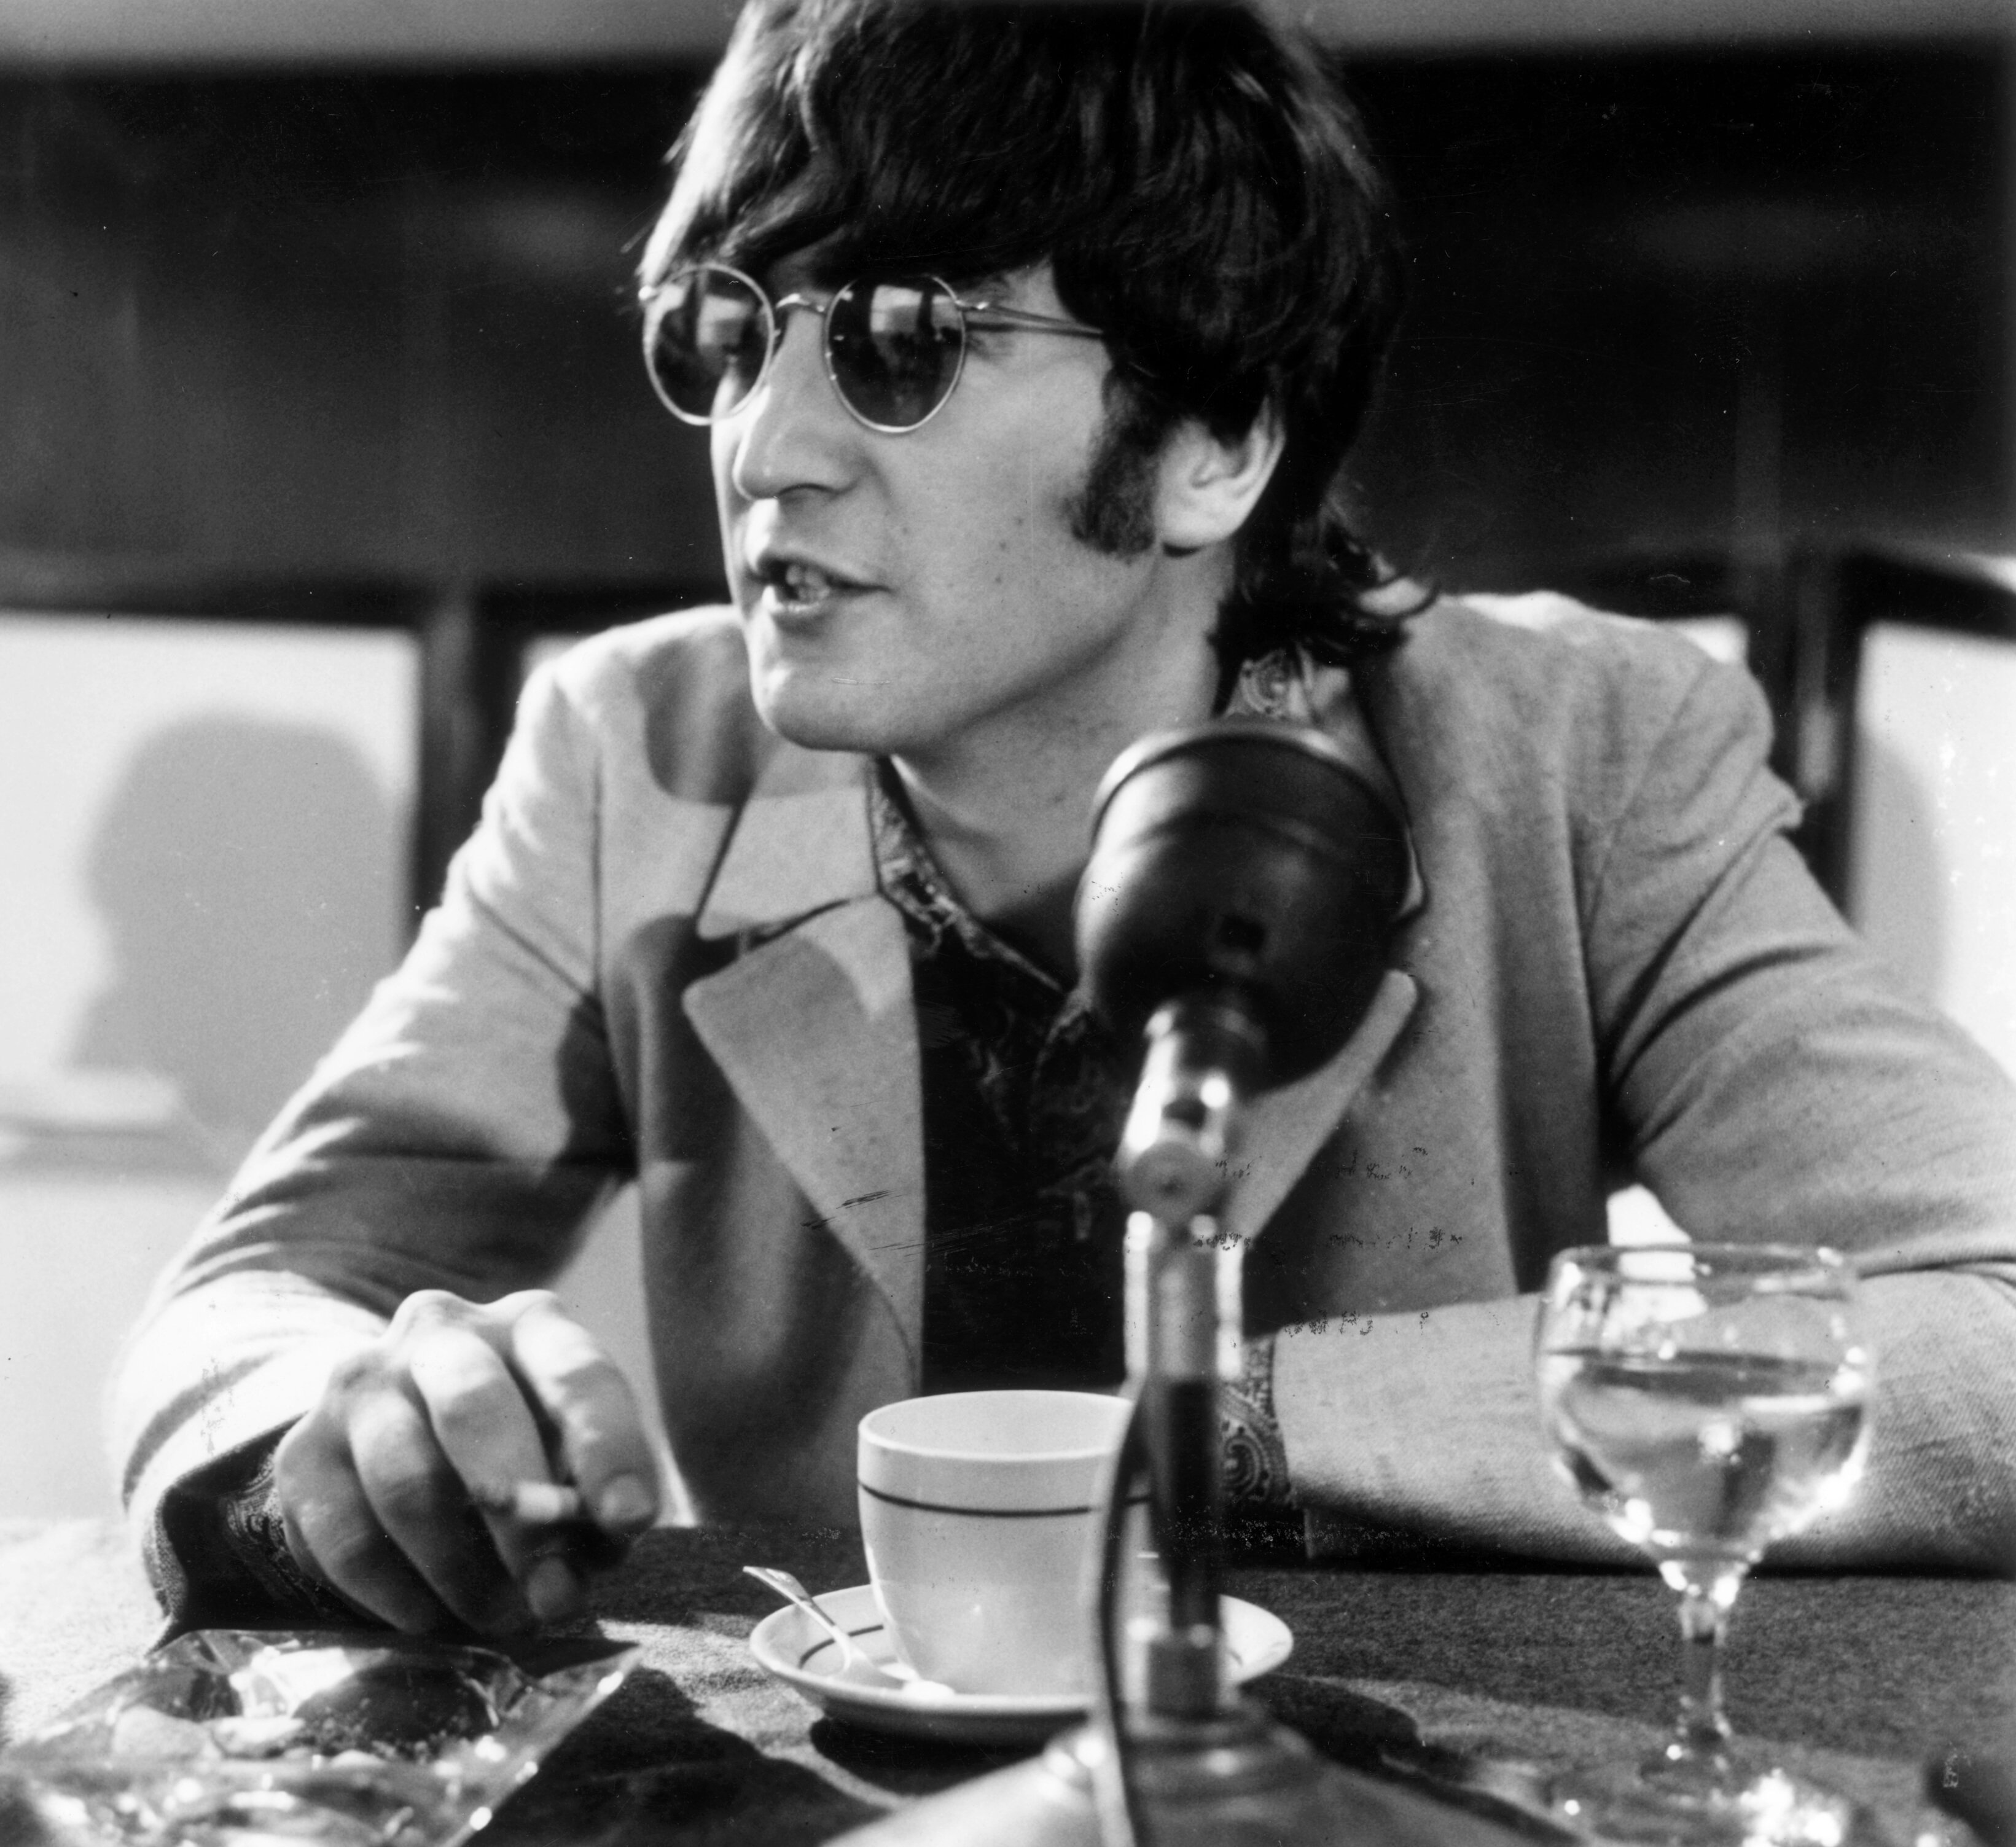 "(Just Like) Starting Over" singer John Lennon in glasses